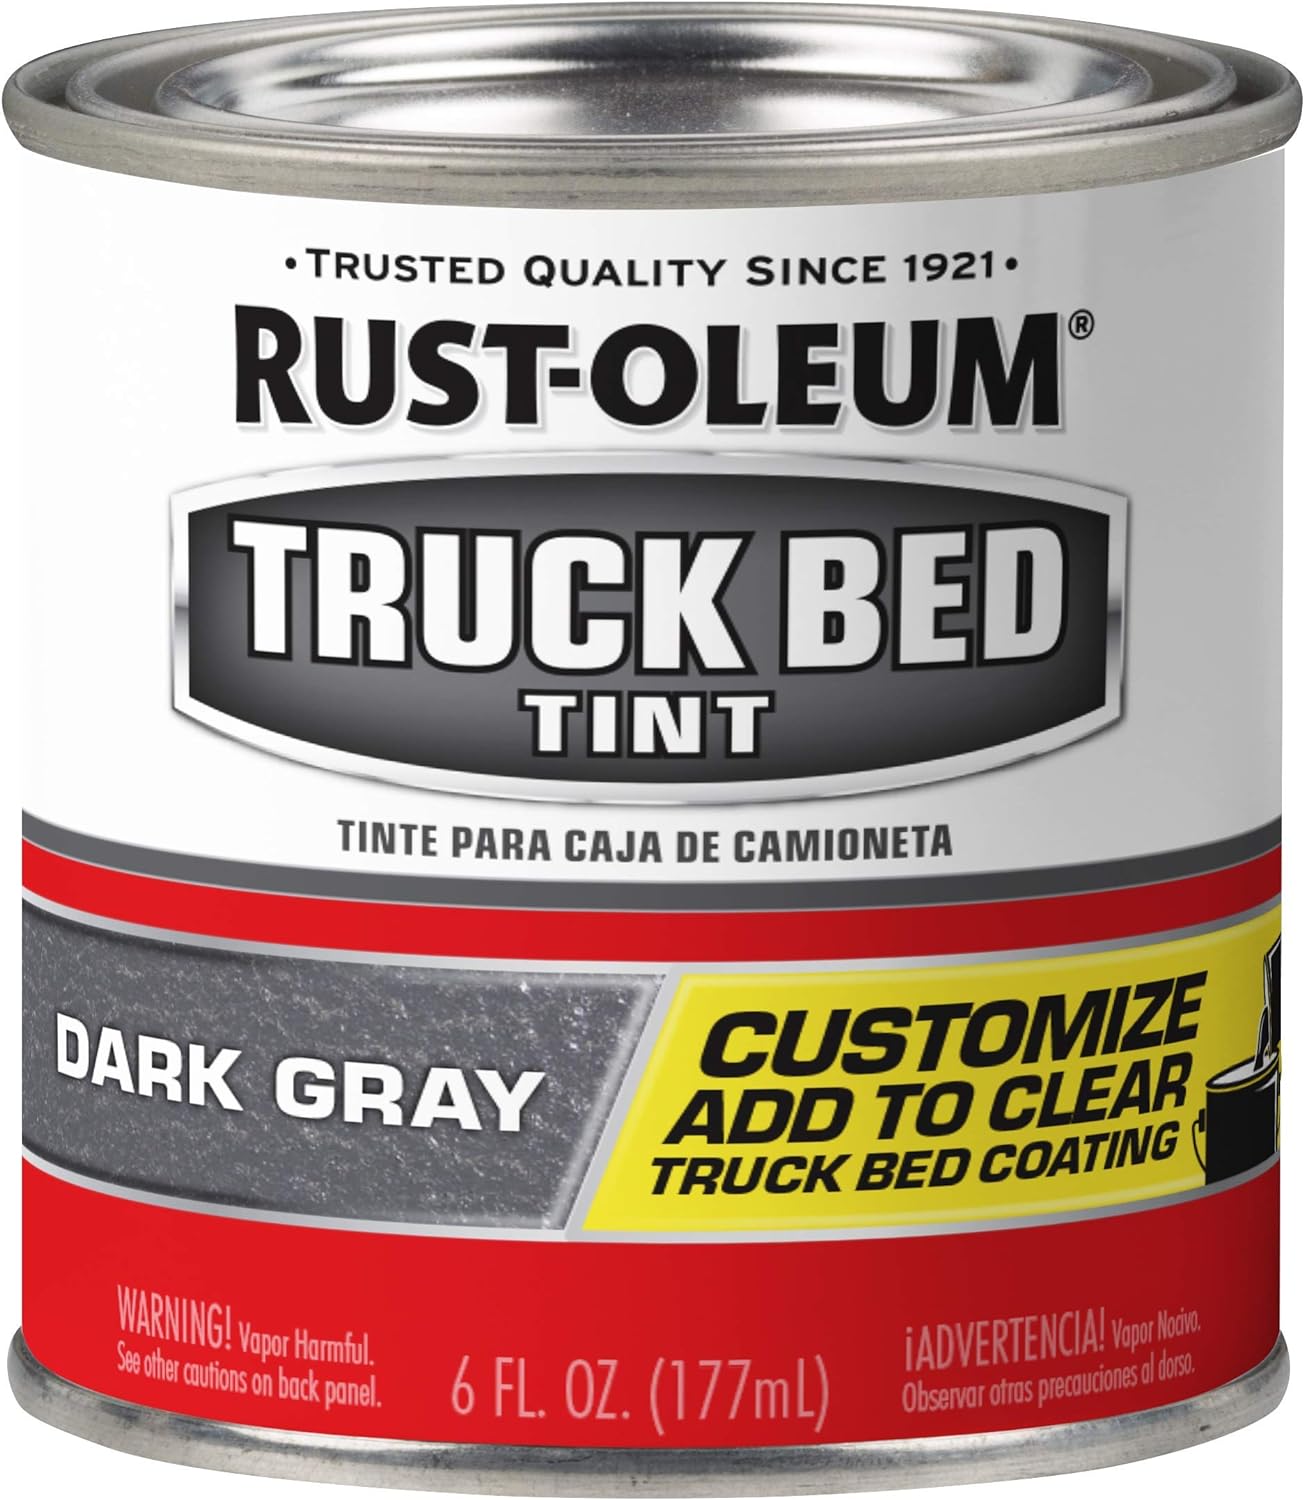 Rust-Oleum 344403 Tint Truck Bed Coating, Dark Gray